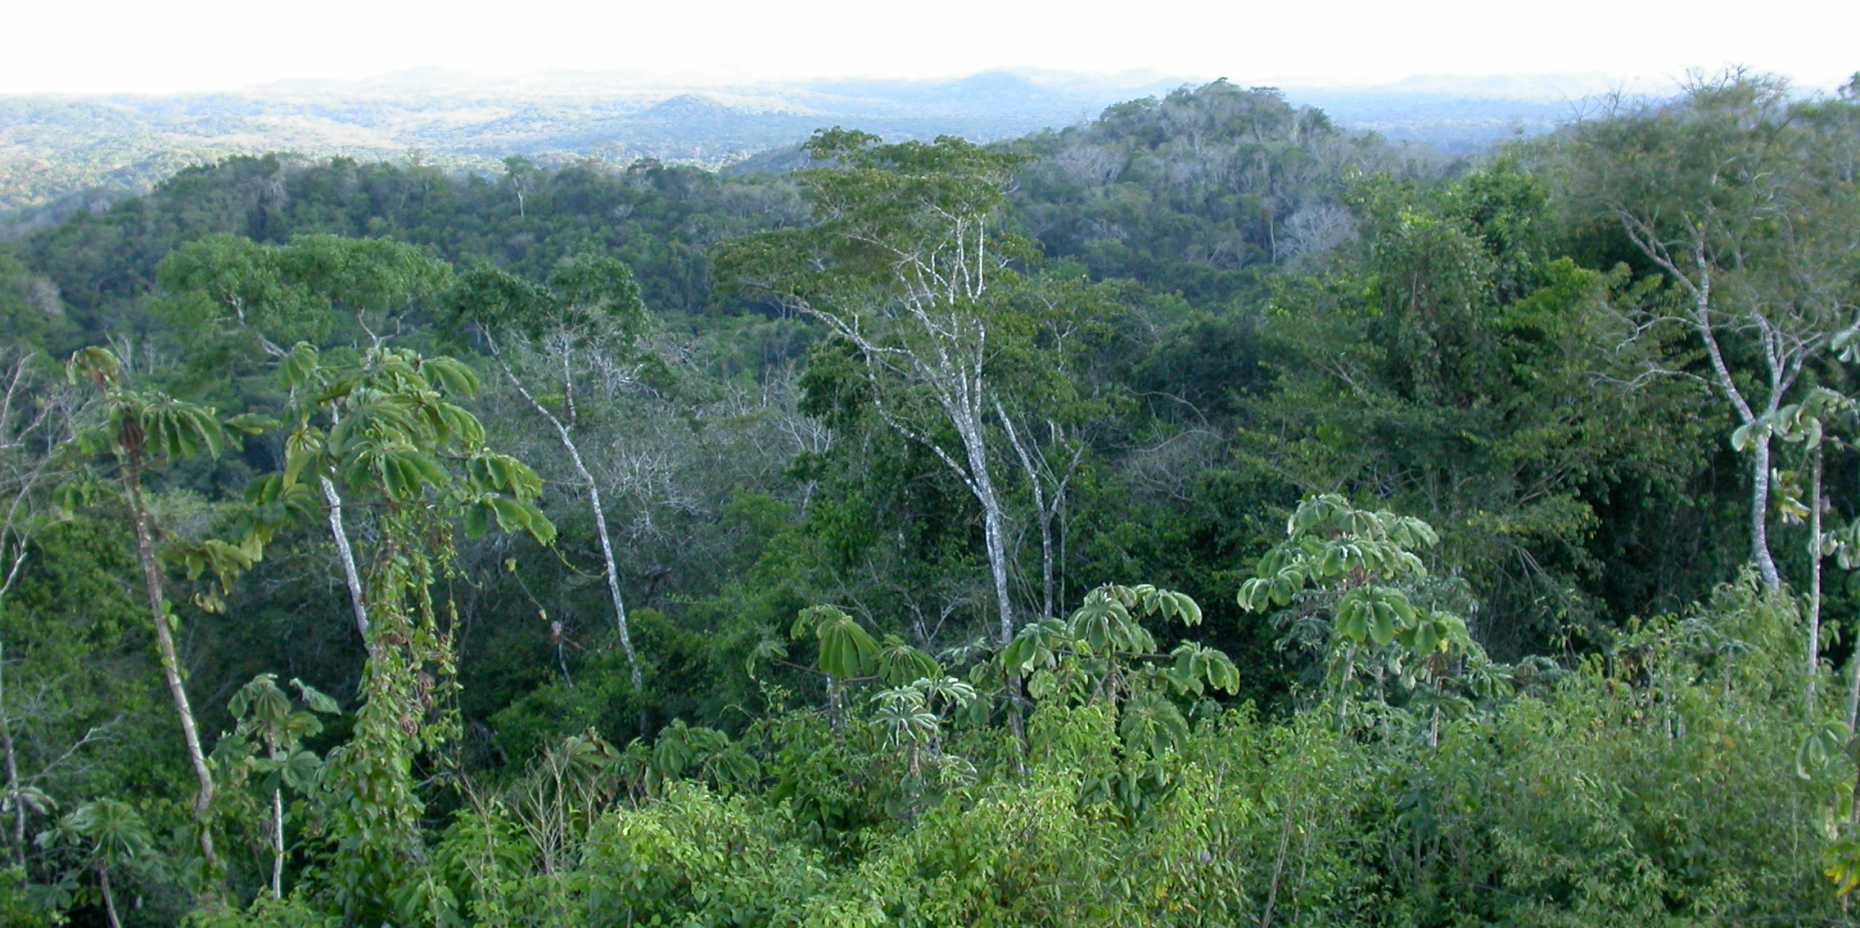 Vergr?sserte Ansicht: Regenwald in Belize